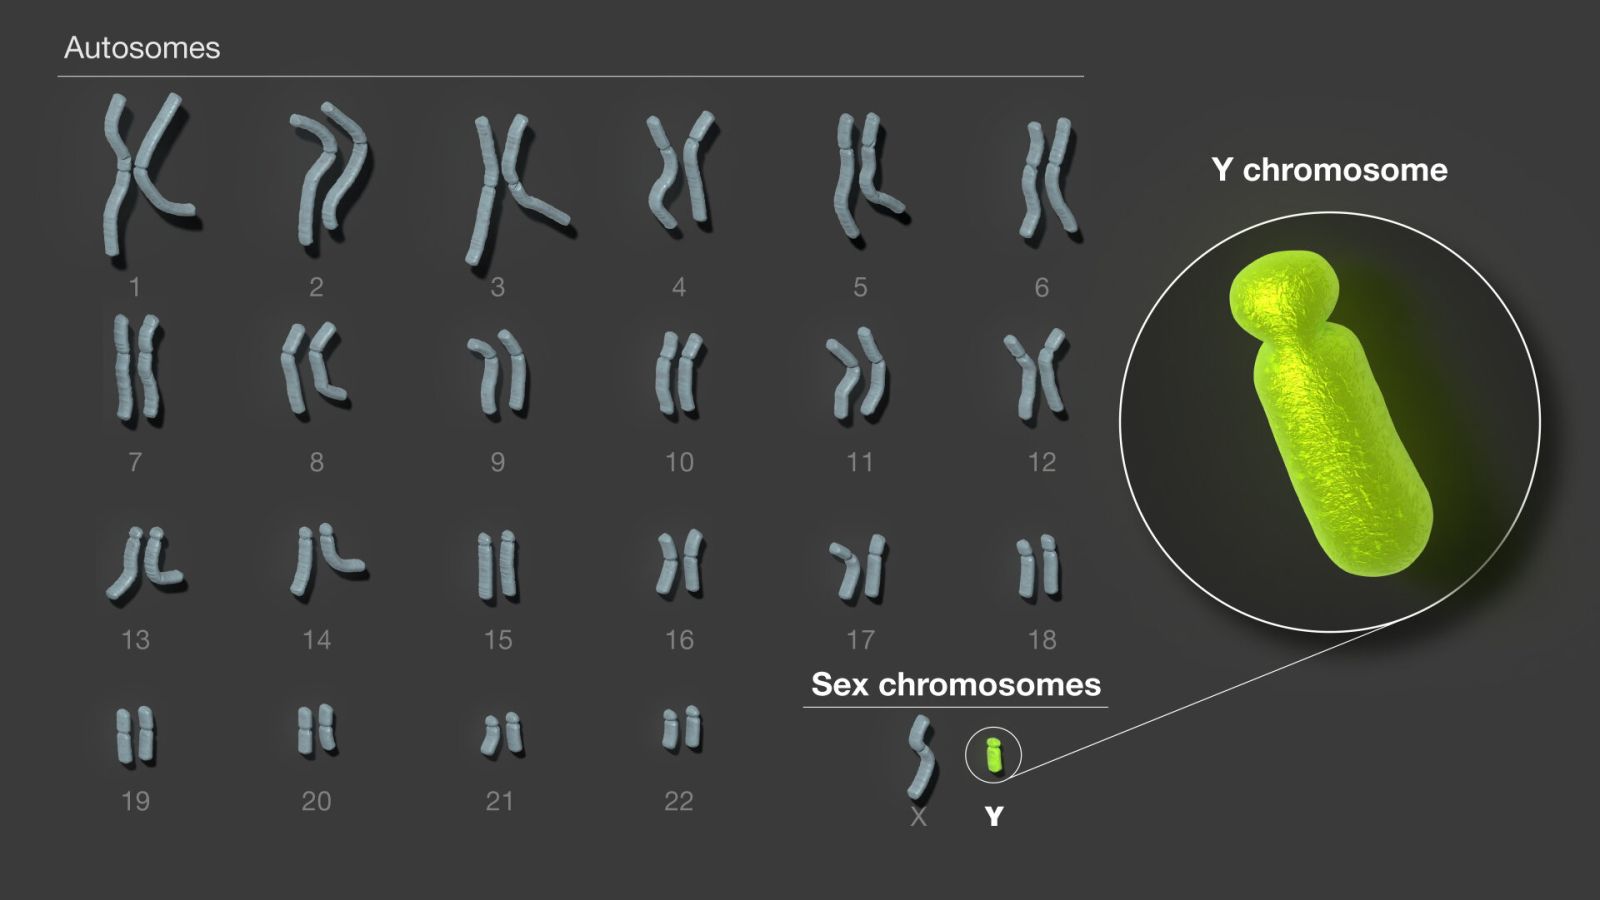 📰 O cromossomo Y humano finalmente foi completamente sequenciado